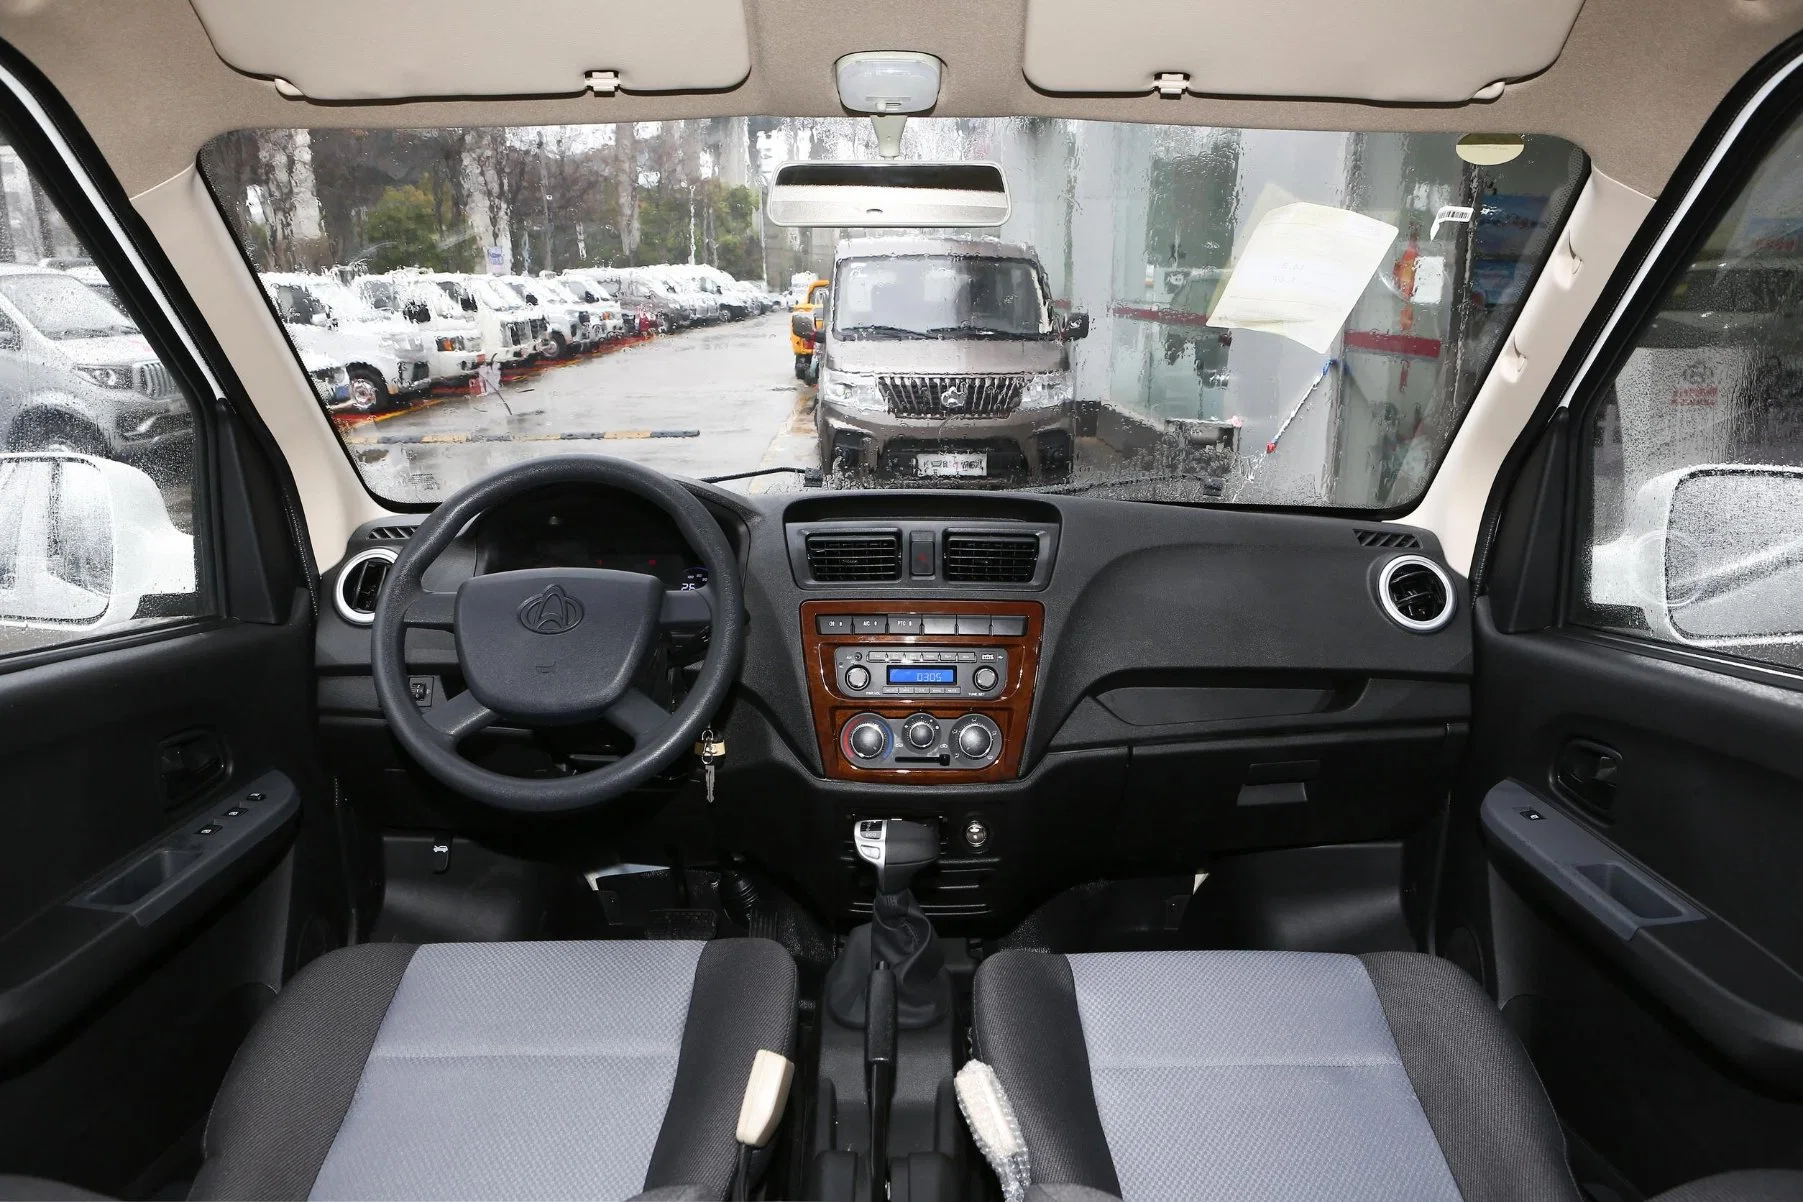 High Speed Günstige Großhandel/Lieferantspreis Auto Changan Verwendet Elektrisches Fahrzeug Auto Elektro Mini LED Van